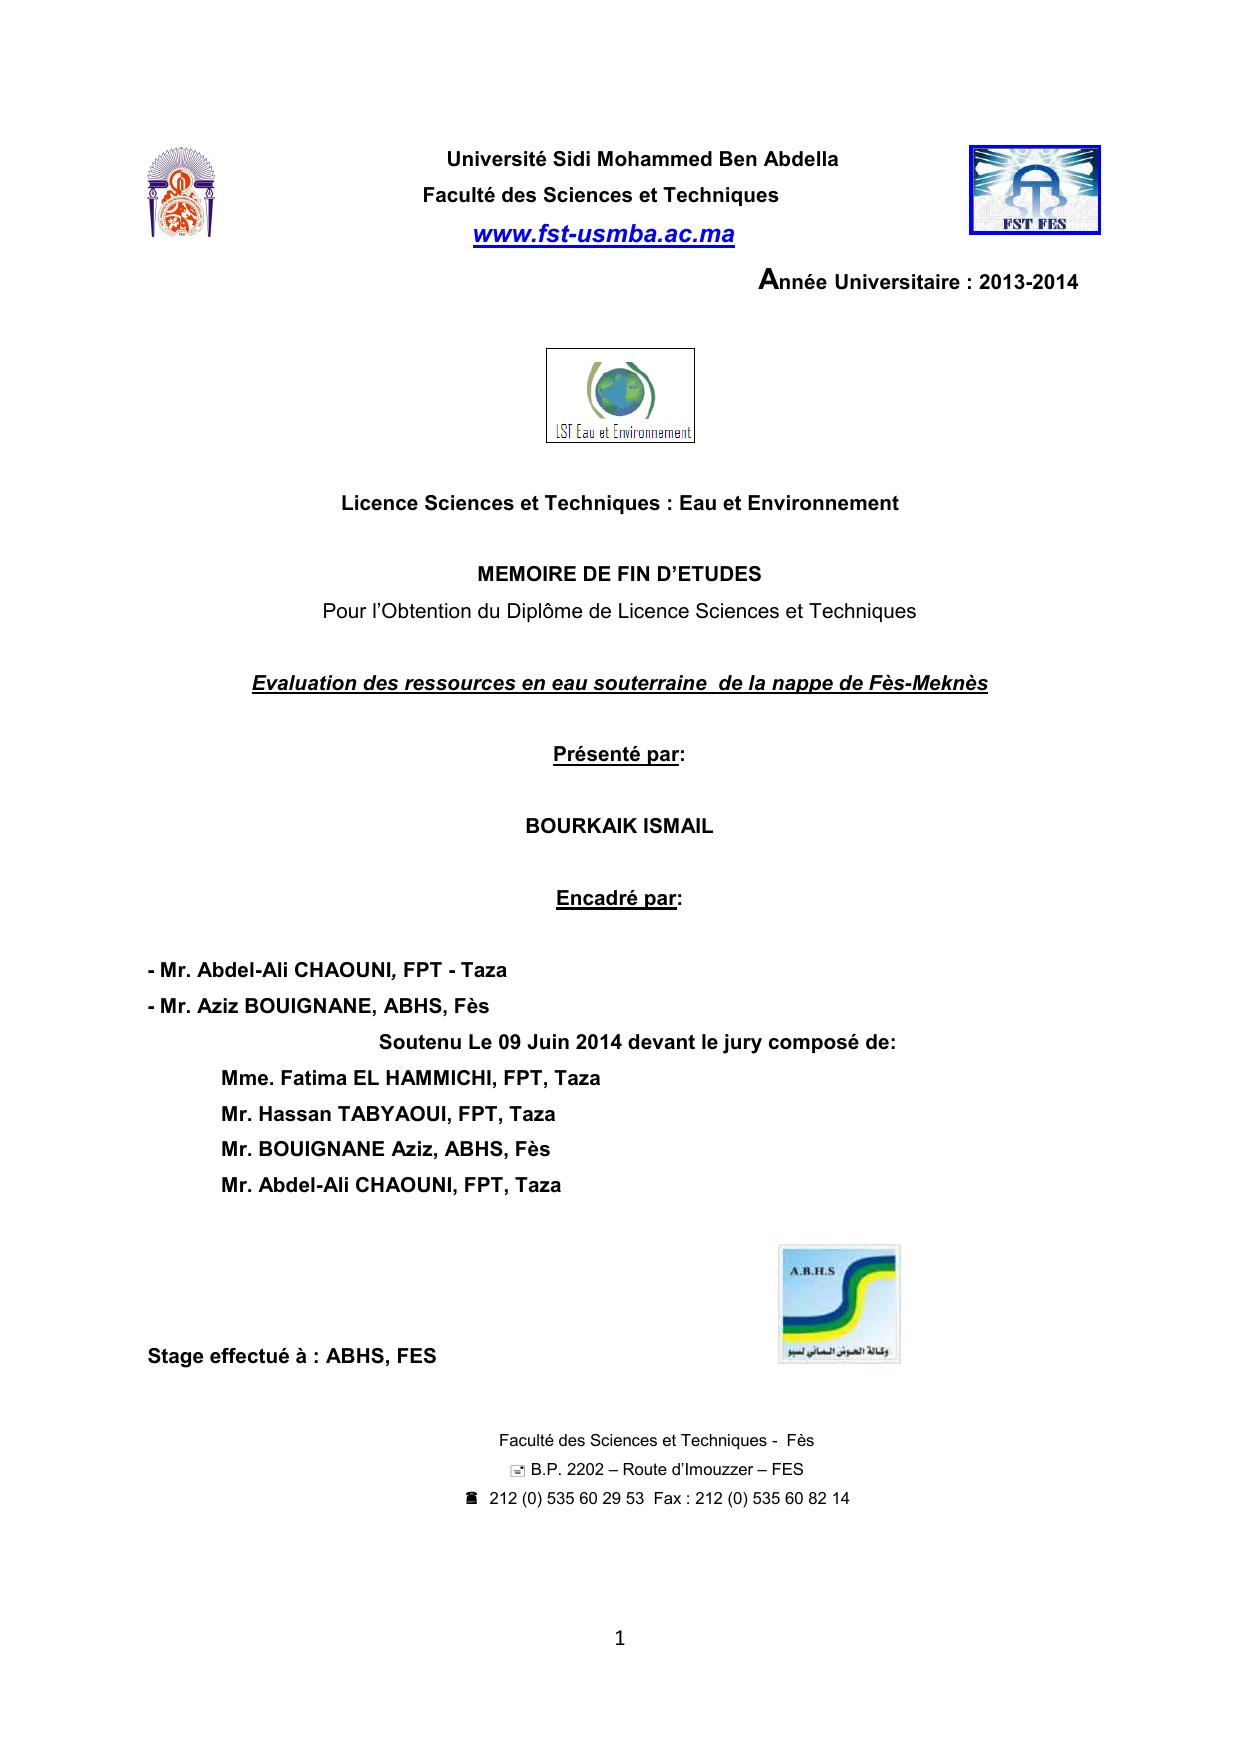 Evaluation des ressources en eau souterraine de la nappe de Fès-Meknès